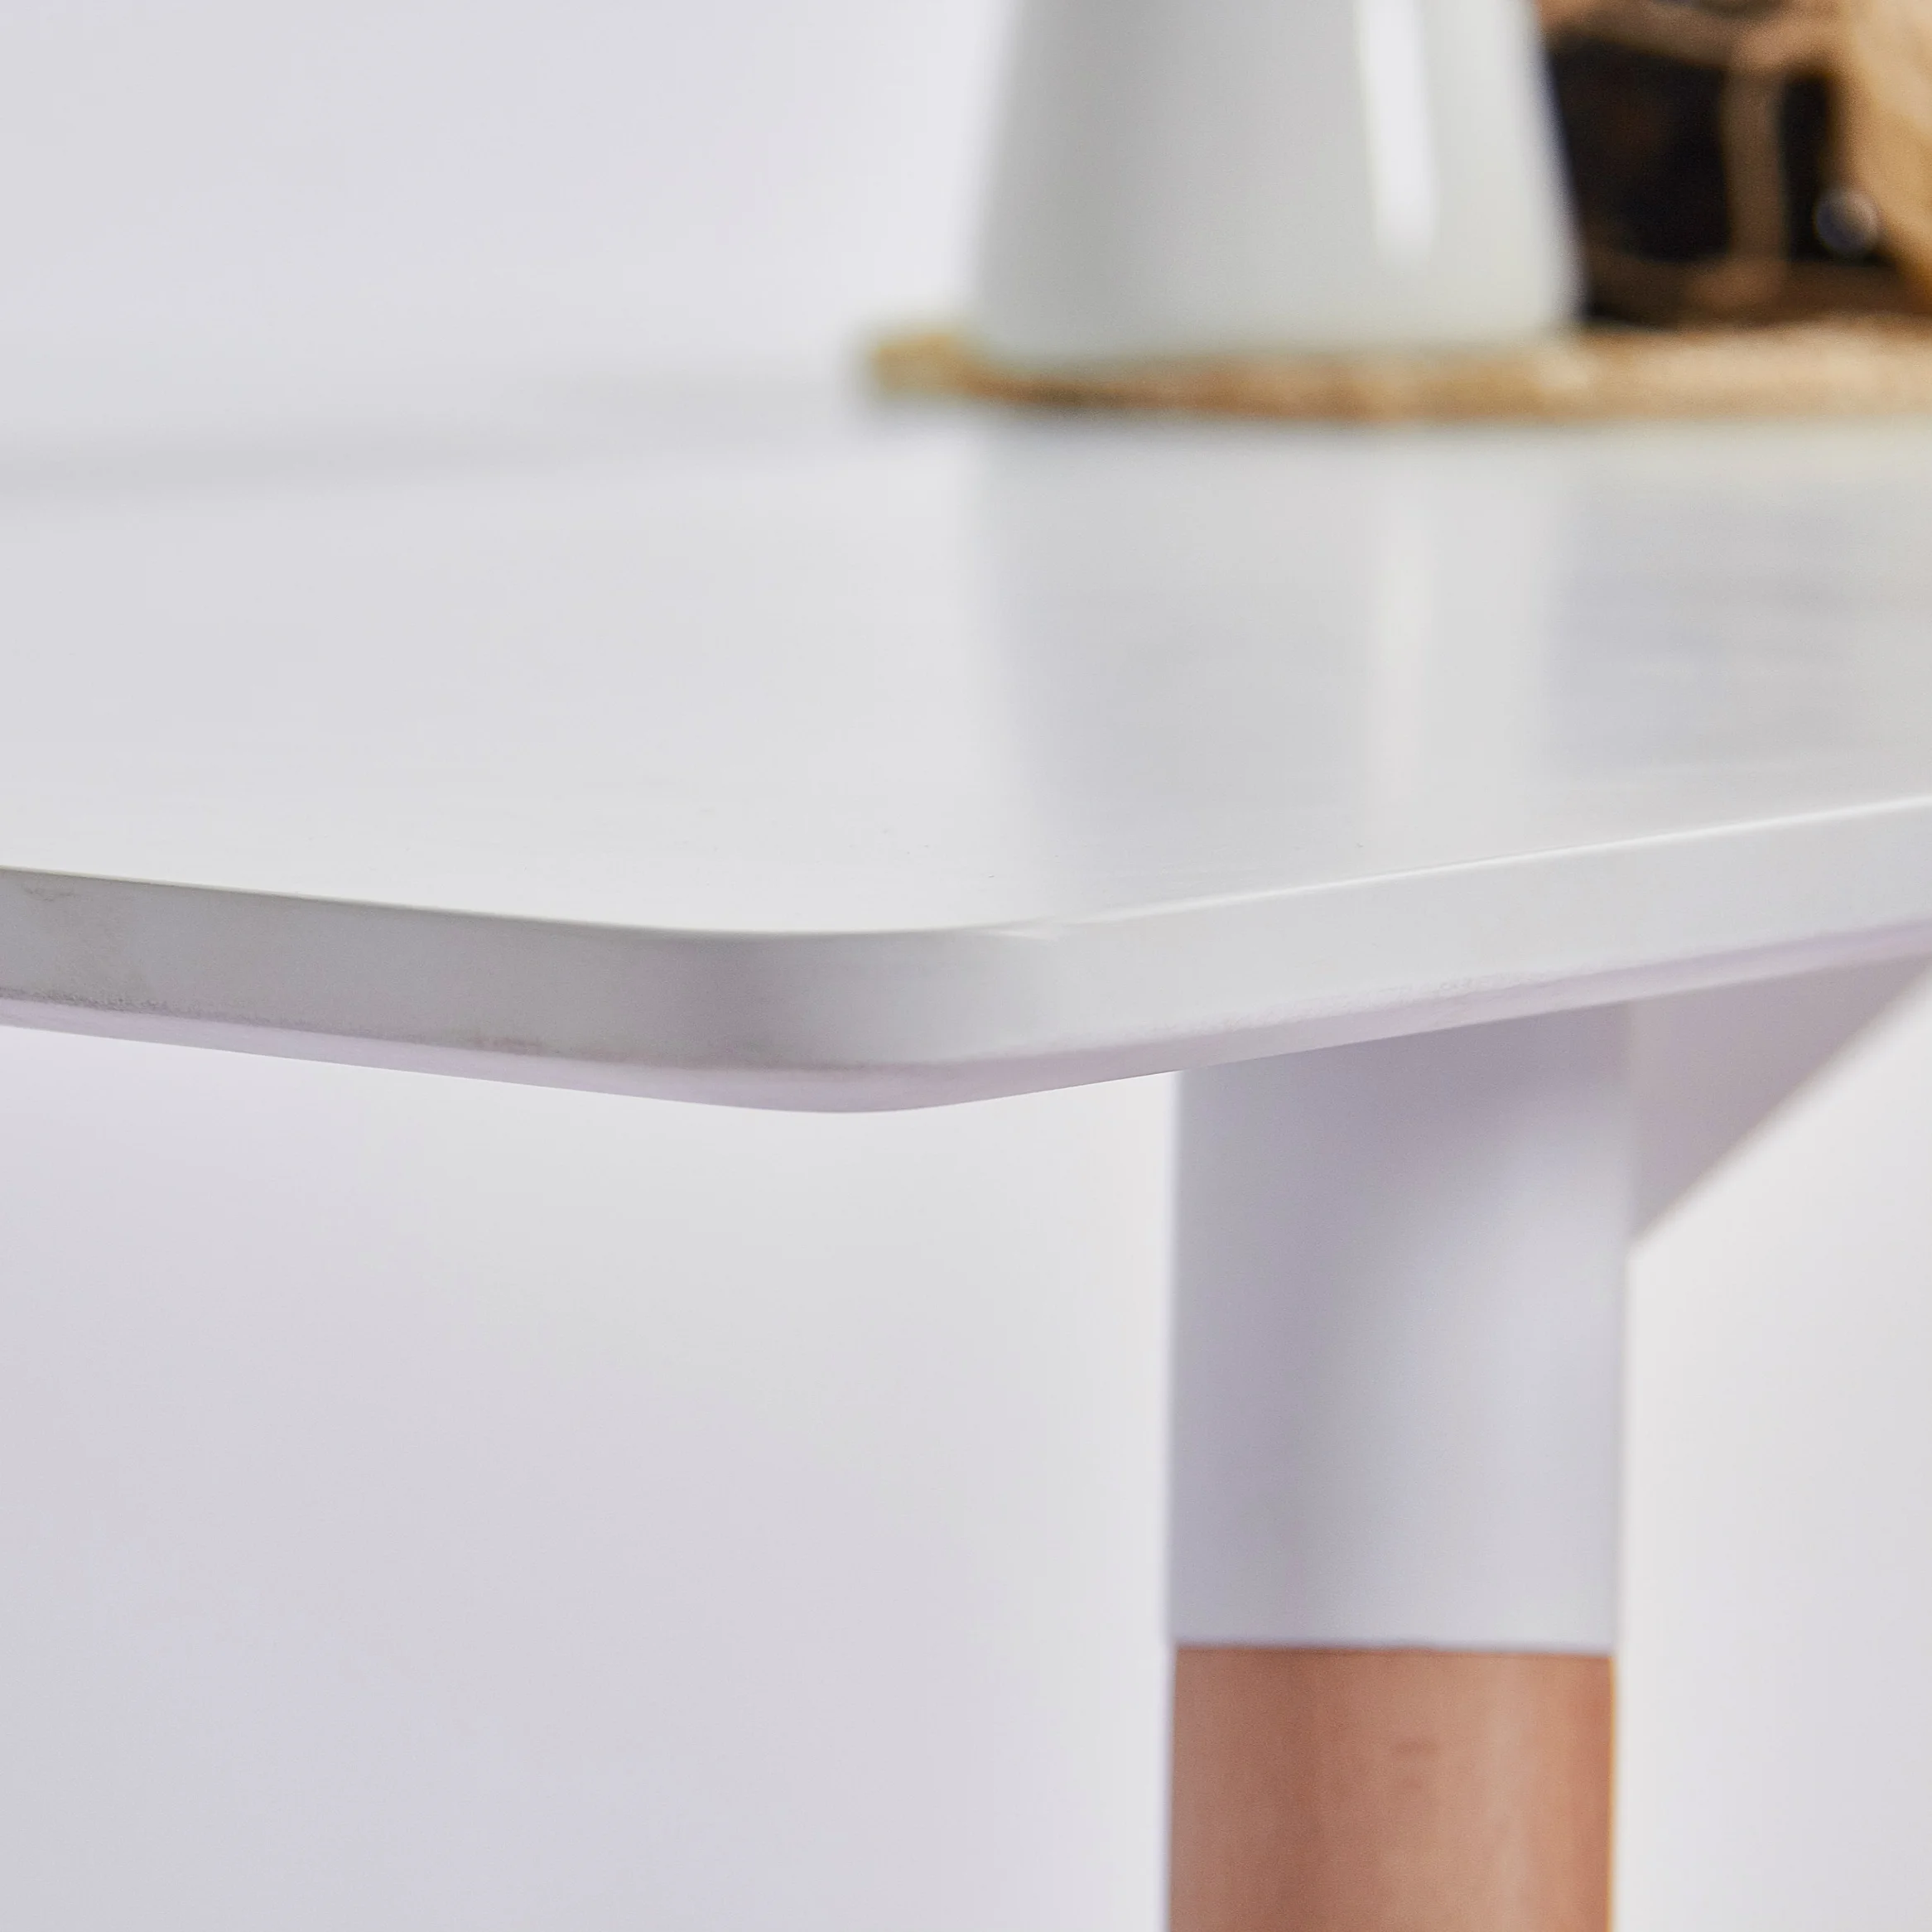  Мебель для ресторана современный обеденный набор из МДФ стол белого массива дерева